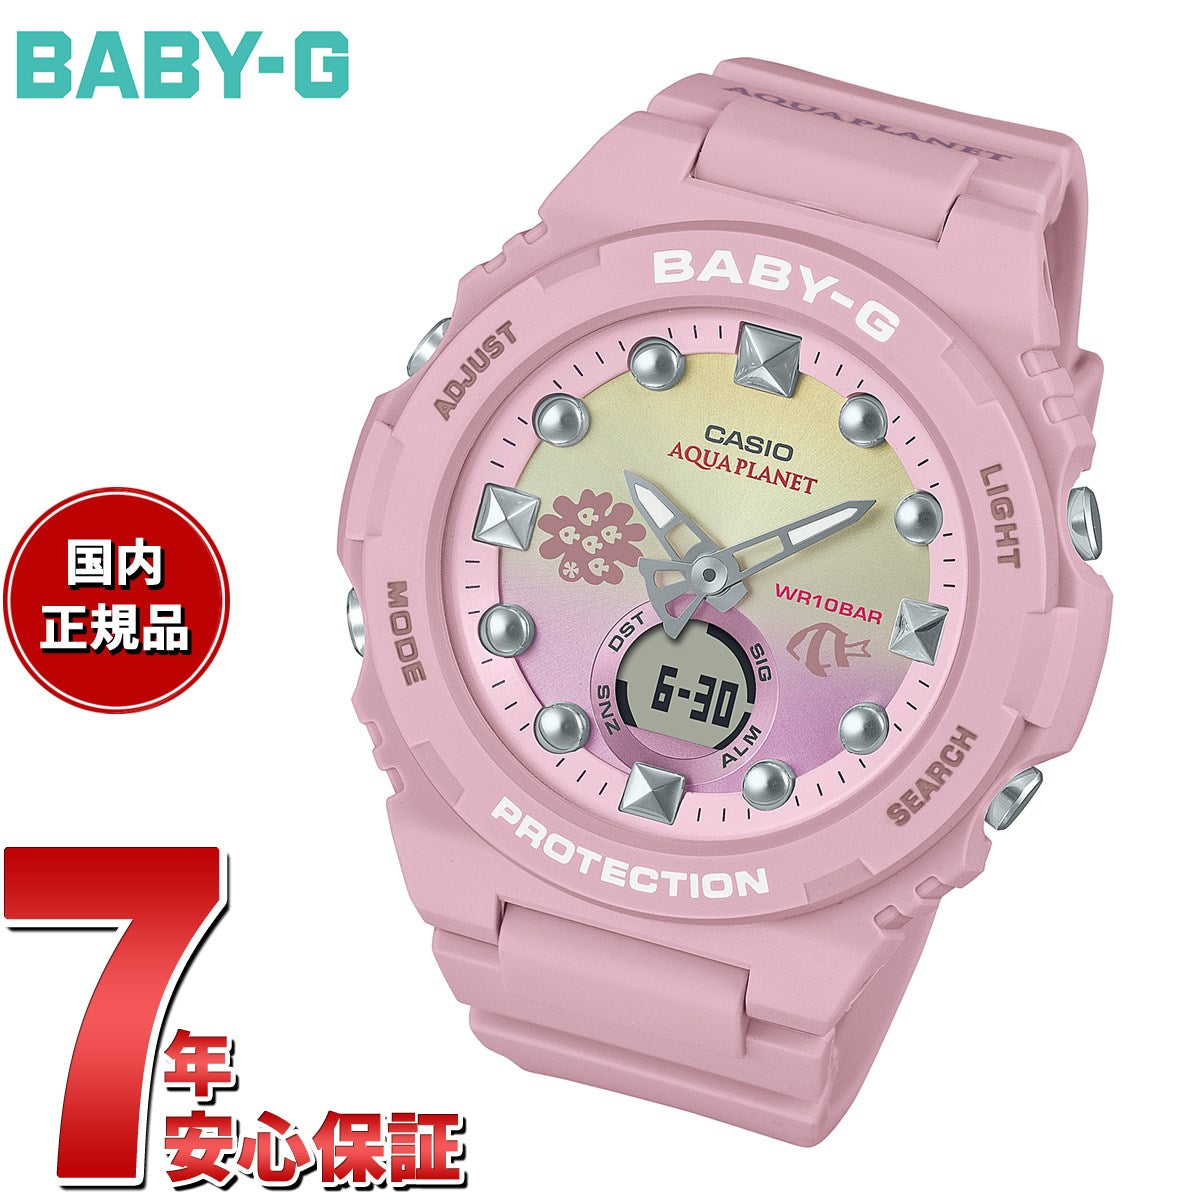 BABY-G カシオ ベビーG レディース アクアプラネット コラボ 腕時計